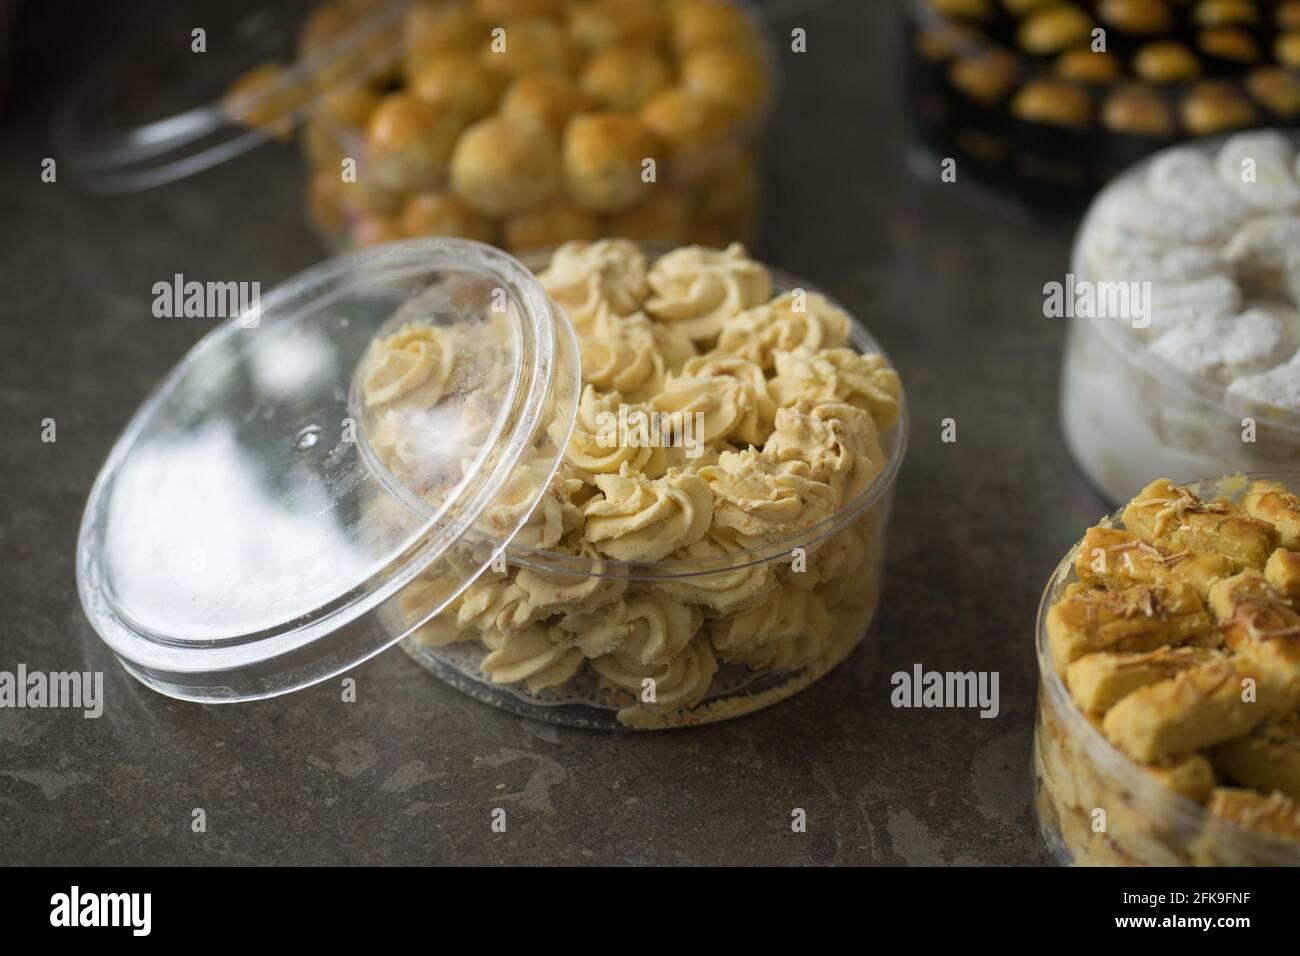 KUE lebaran, biscotti assortiti di specialità indonesiane per Idul Fitri Foto Stock